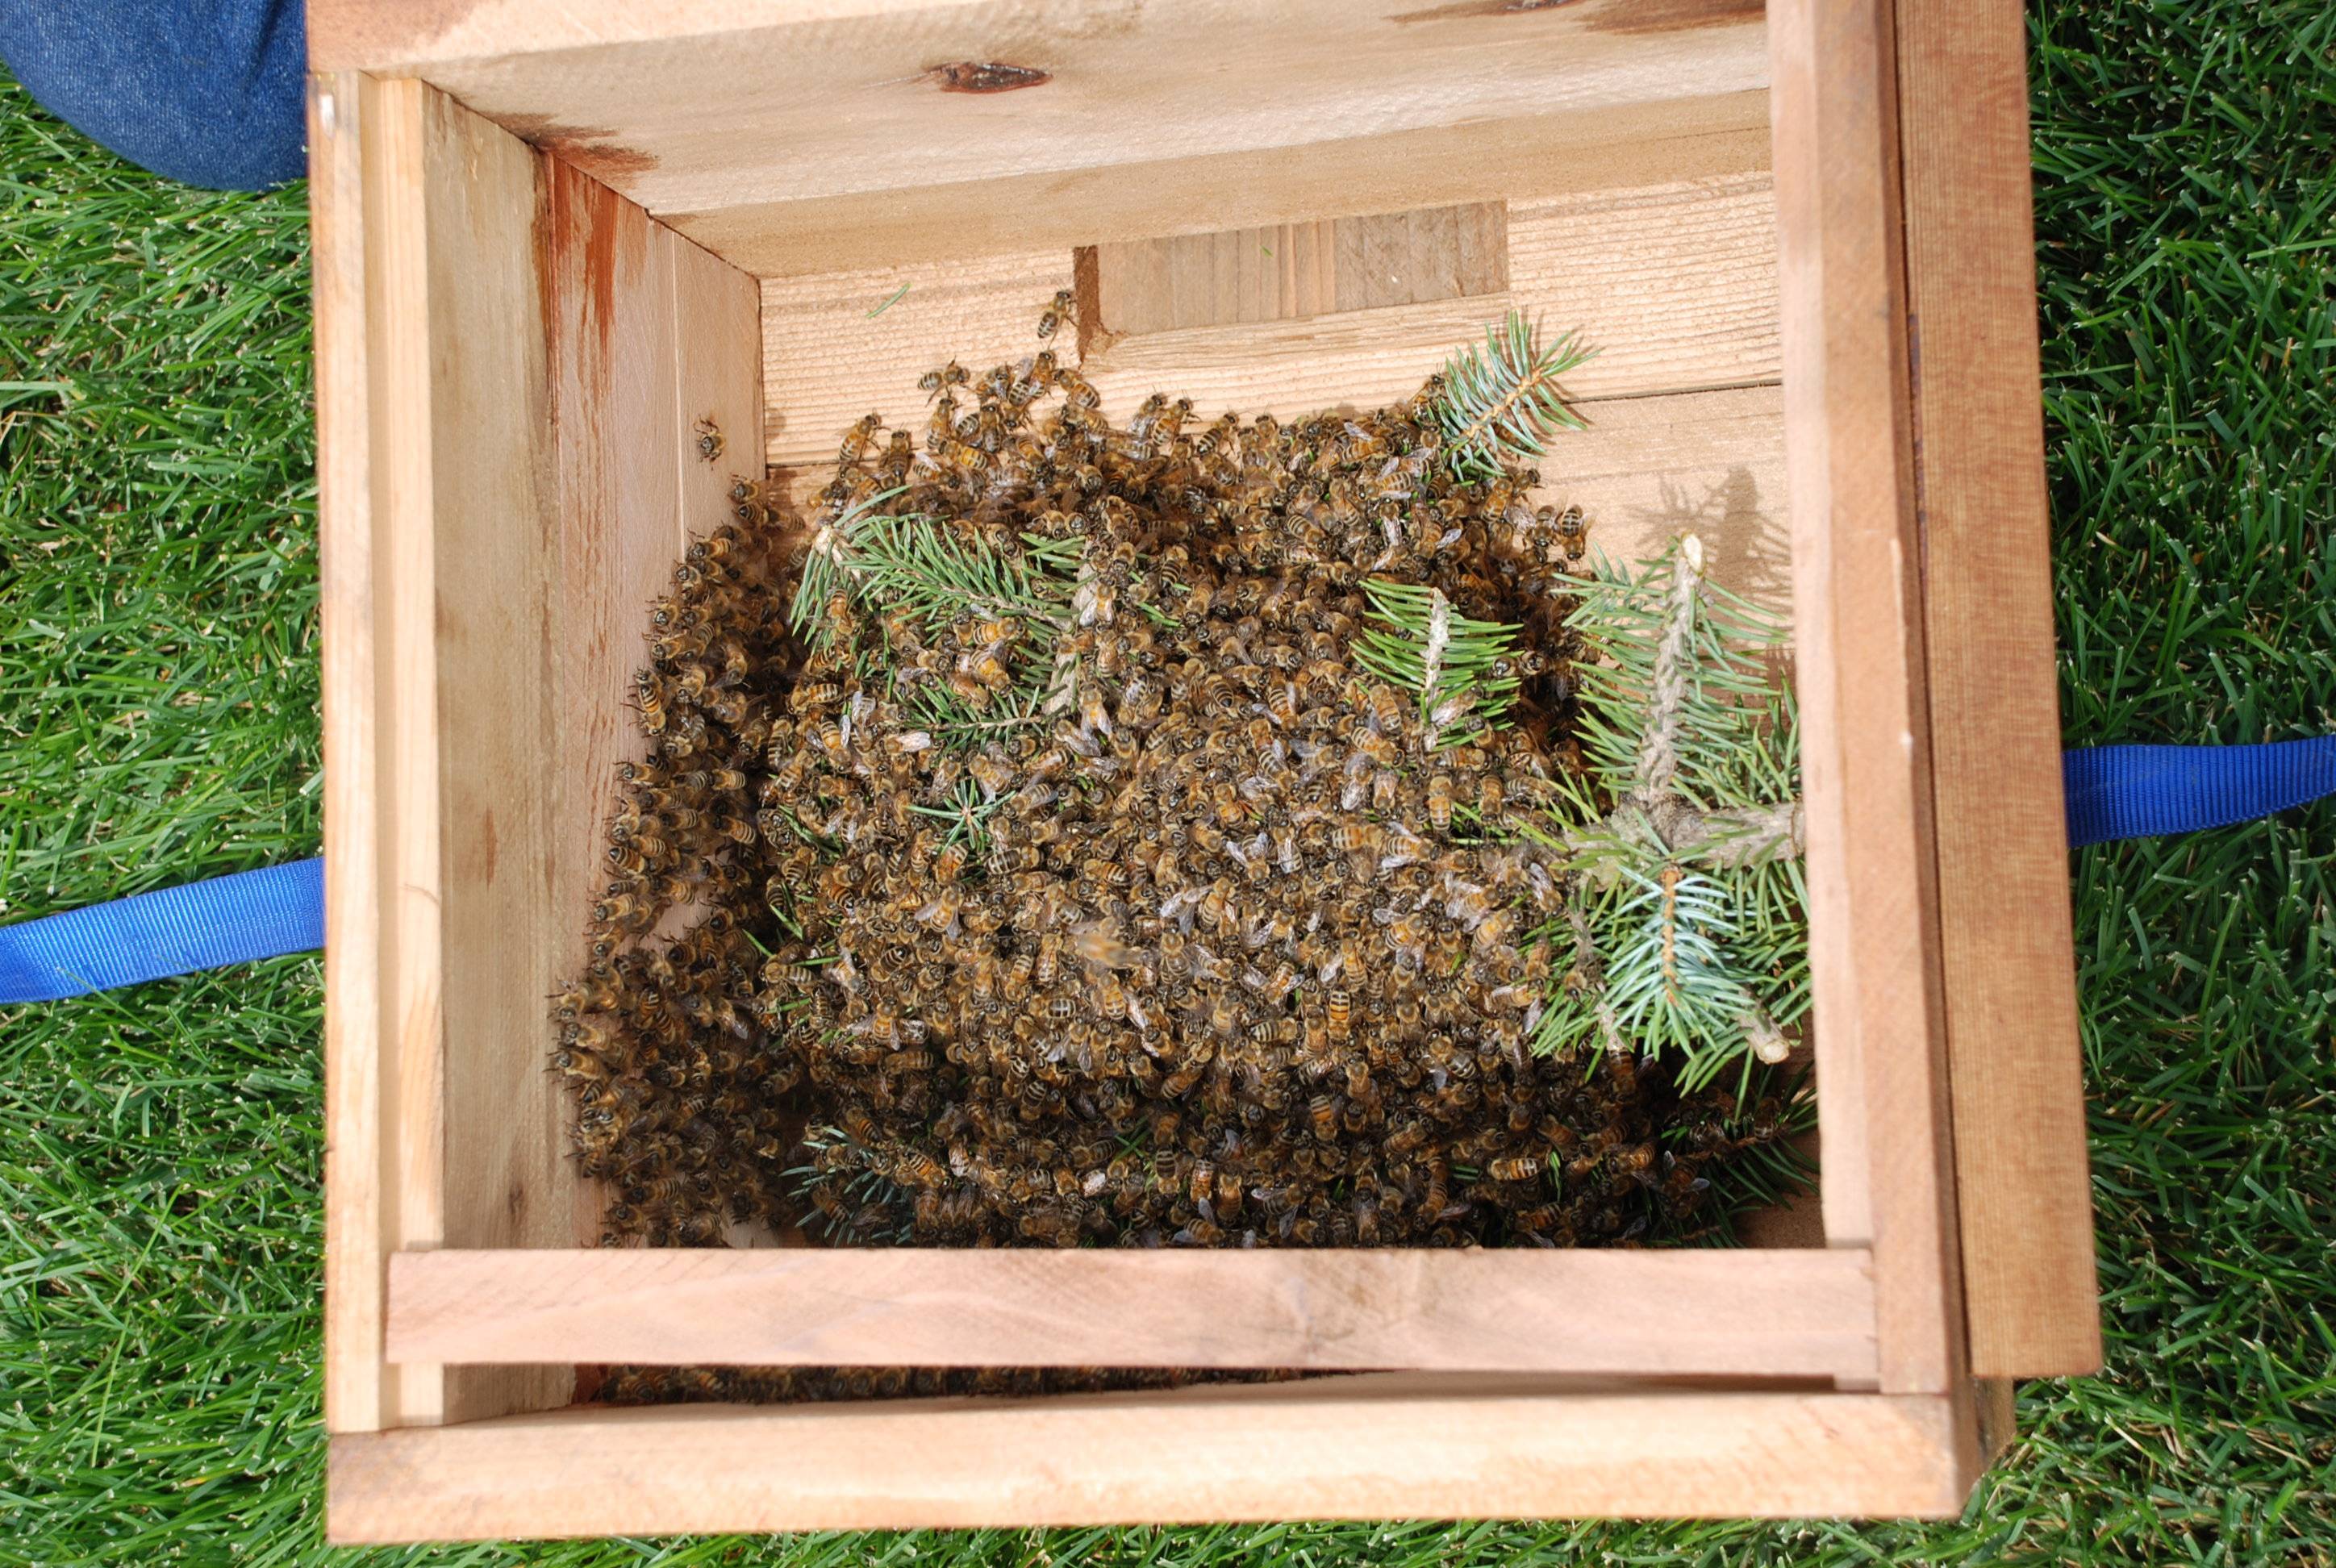 Как отравить пчел и выгнать из деревянного дома?